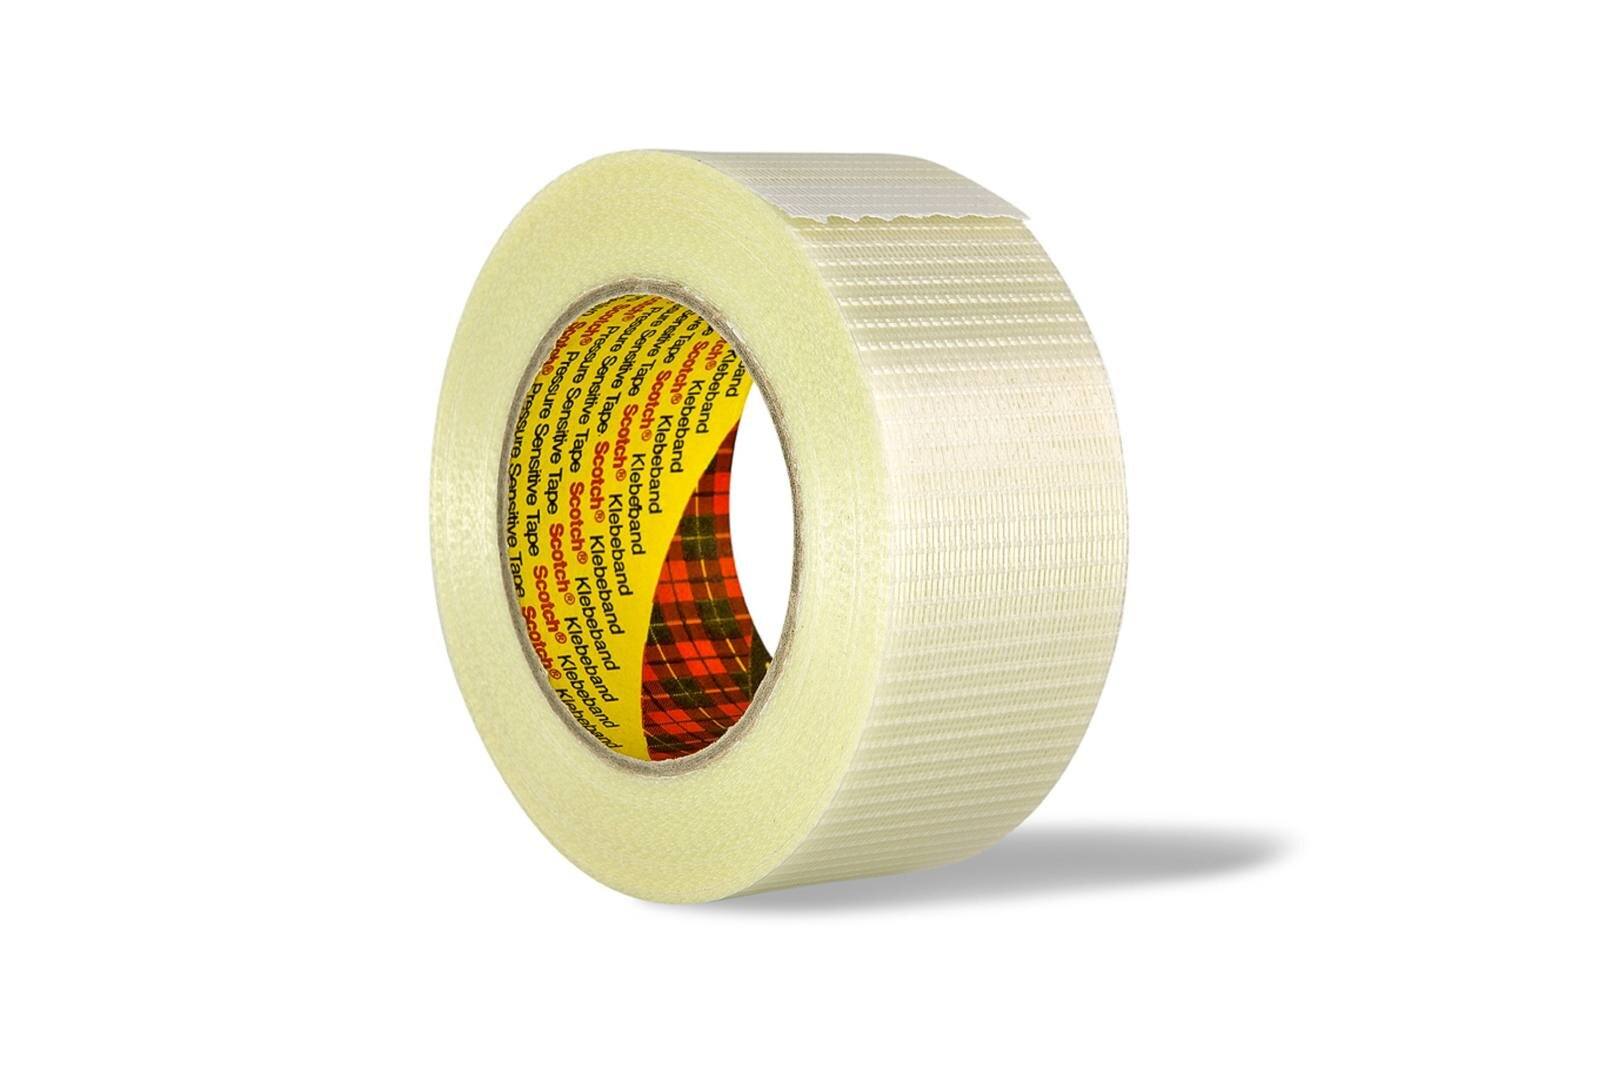 3M Scotch Filamentklebeband 8959, Transparent, 50 mm x 50 m, 0,145 mm, Einzelverpackt